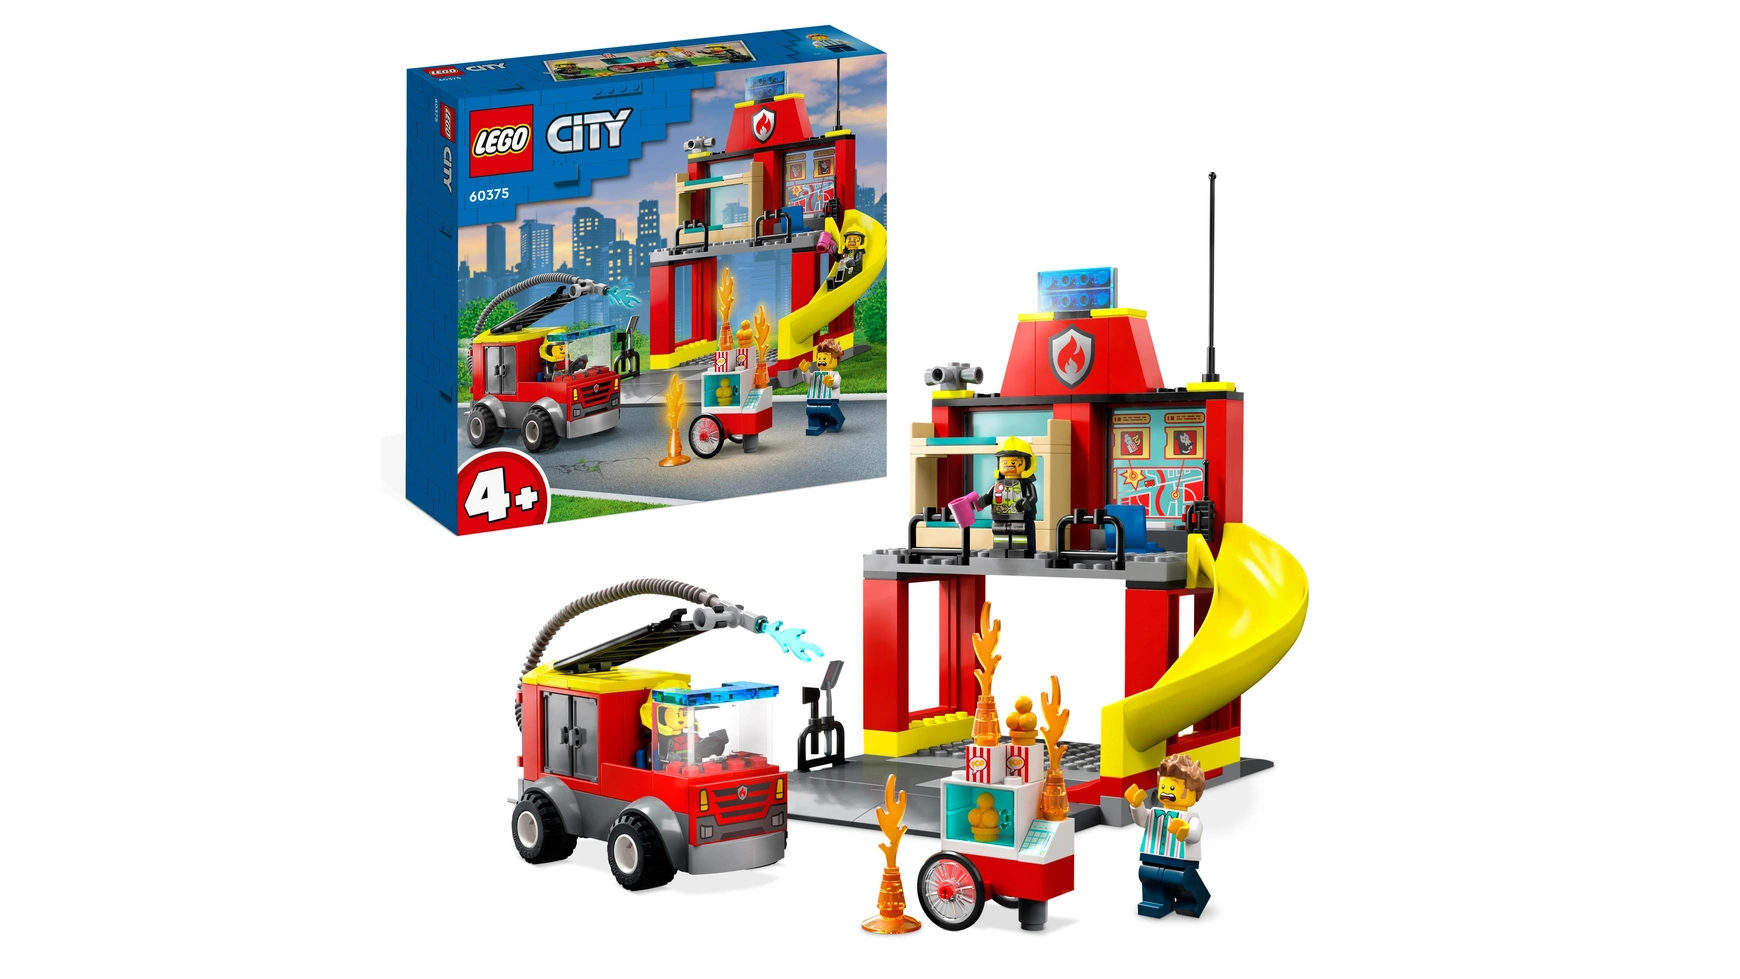 Lego City Пожарная часть и пожарная машина